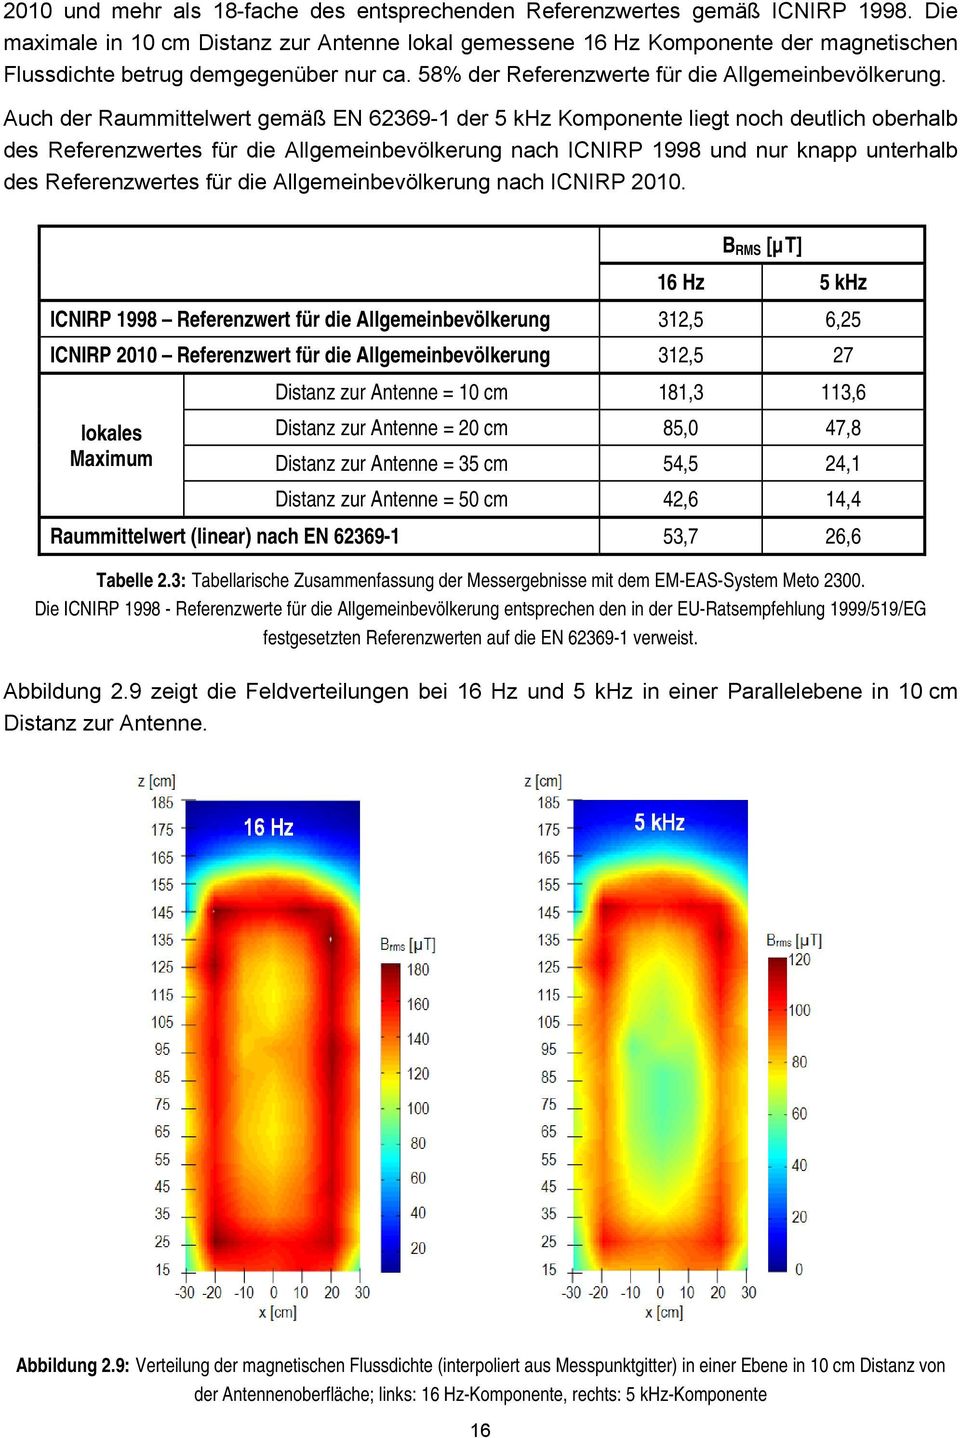 Auch der Raummittelwert gemäß EN 62369-1 der 5 khz Komponente liegt noch deutlich oberhalb des Referenzwertes für die Allgemeinbevölkerung nach ICNIRP 1998 und nur knapp unterhalb des Referenzwertes